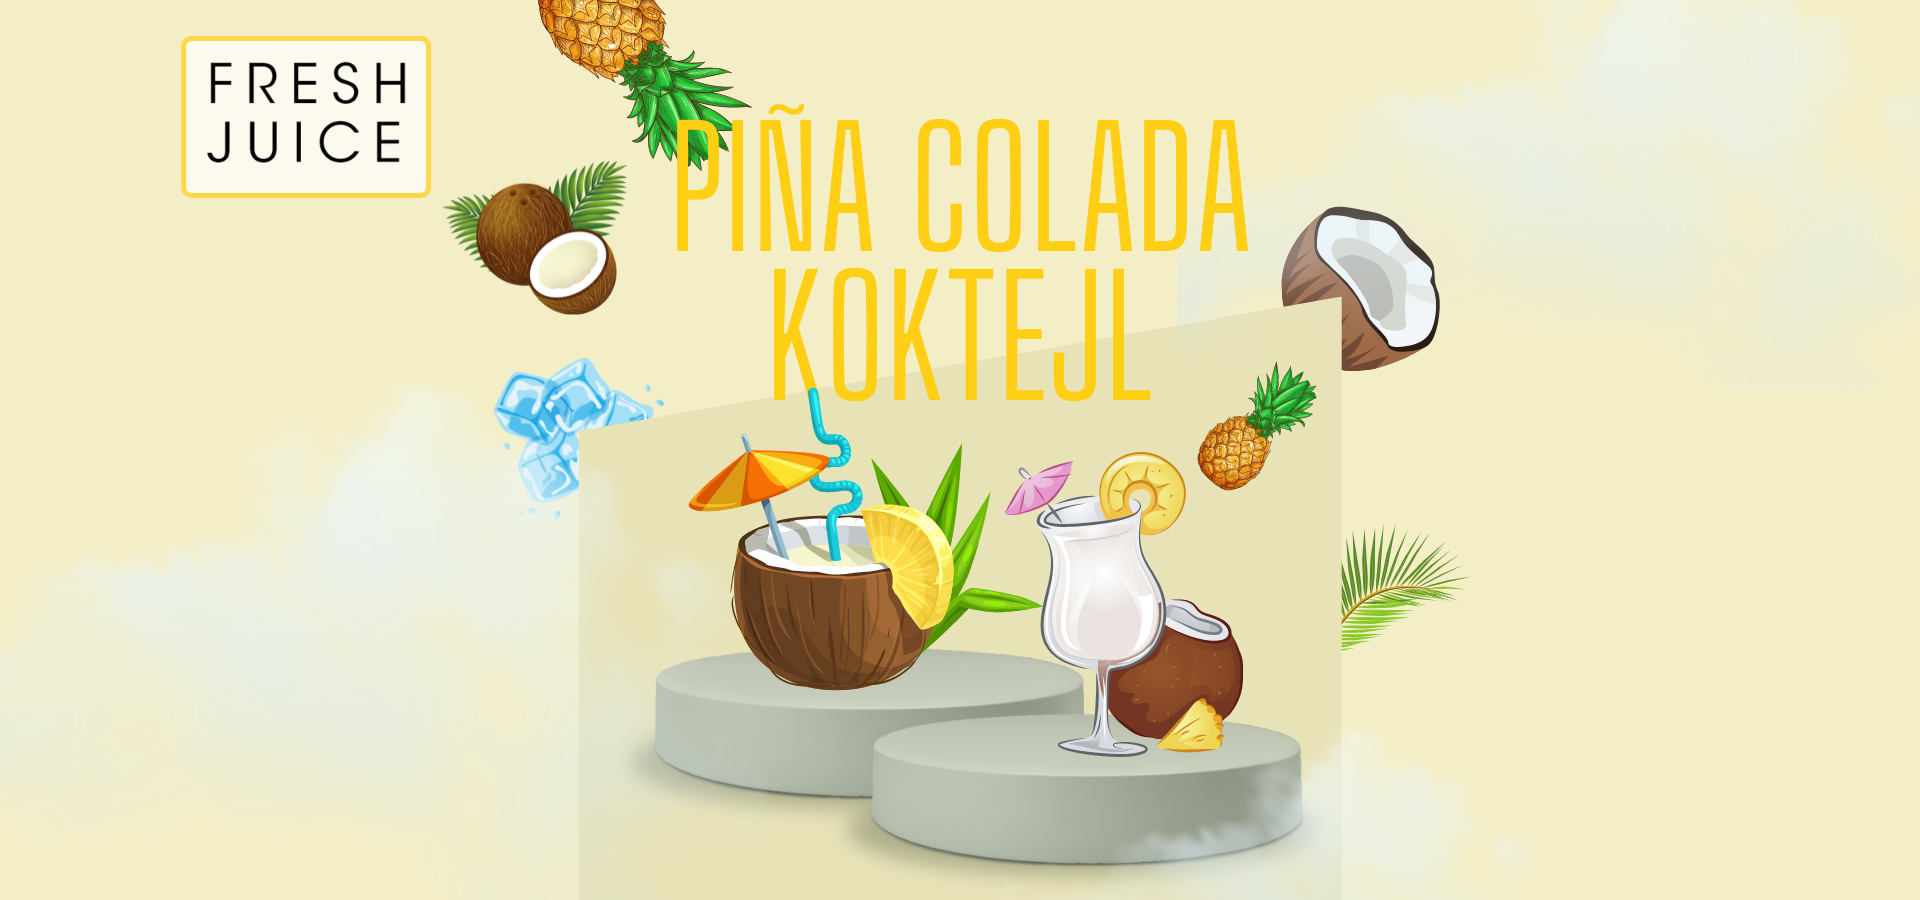 Piña Colada koktejl - blendio™